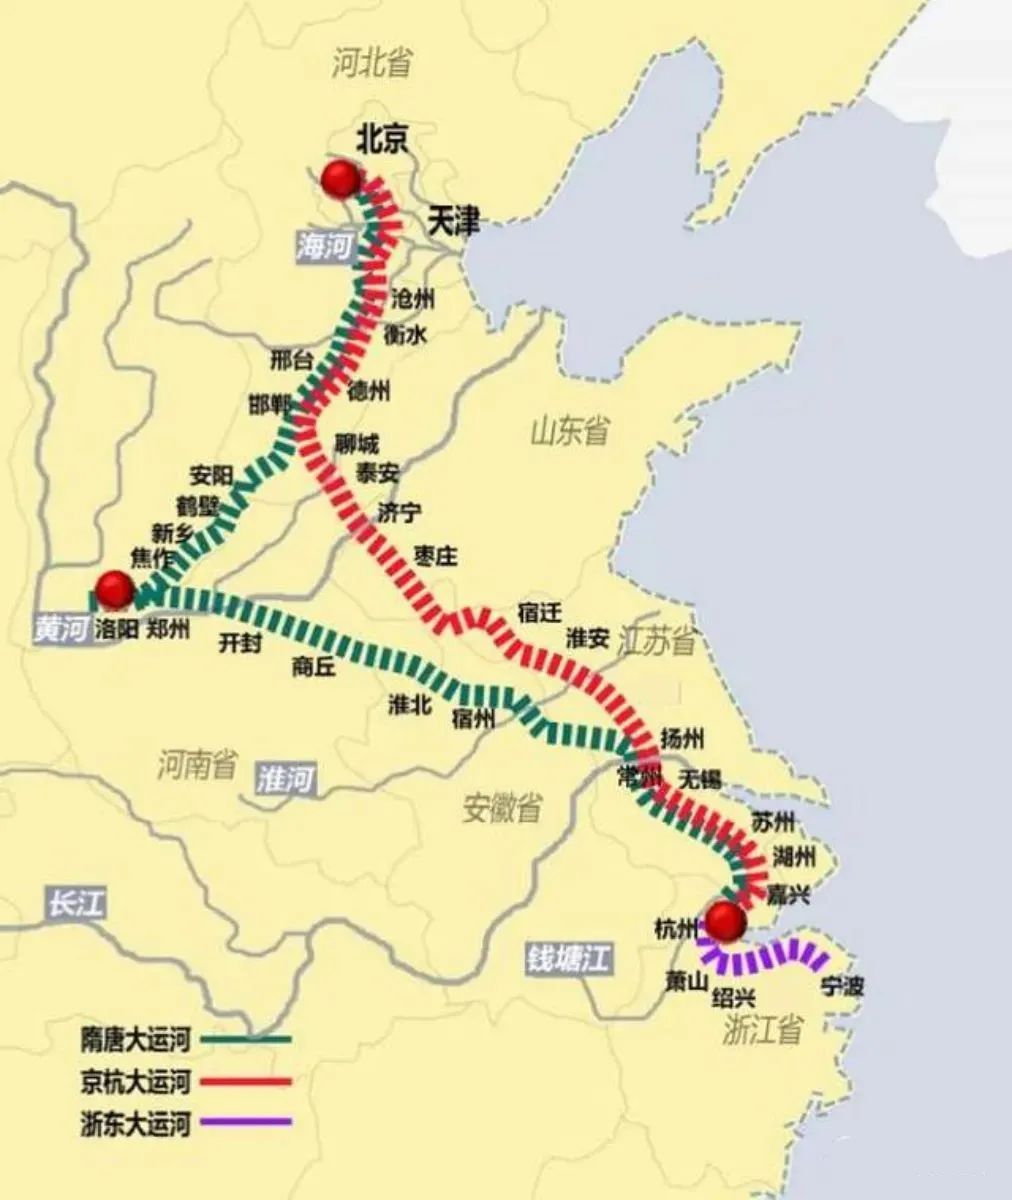 为什么你会觉得:大运河的终点,是杭州?